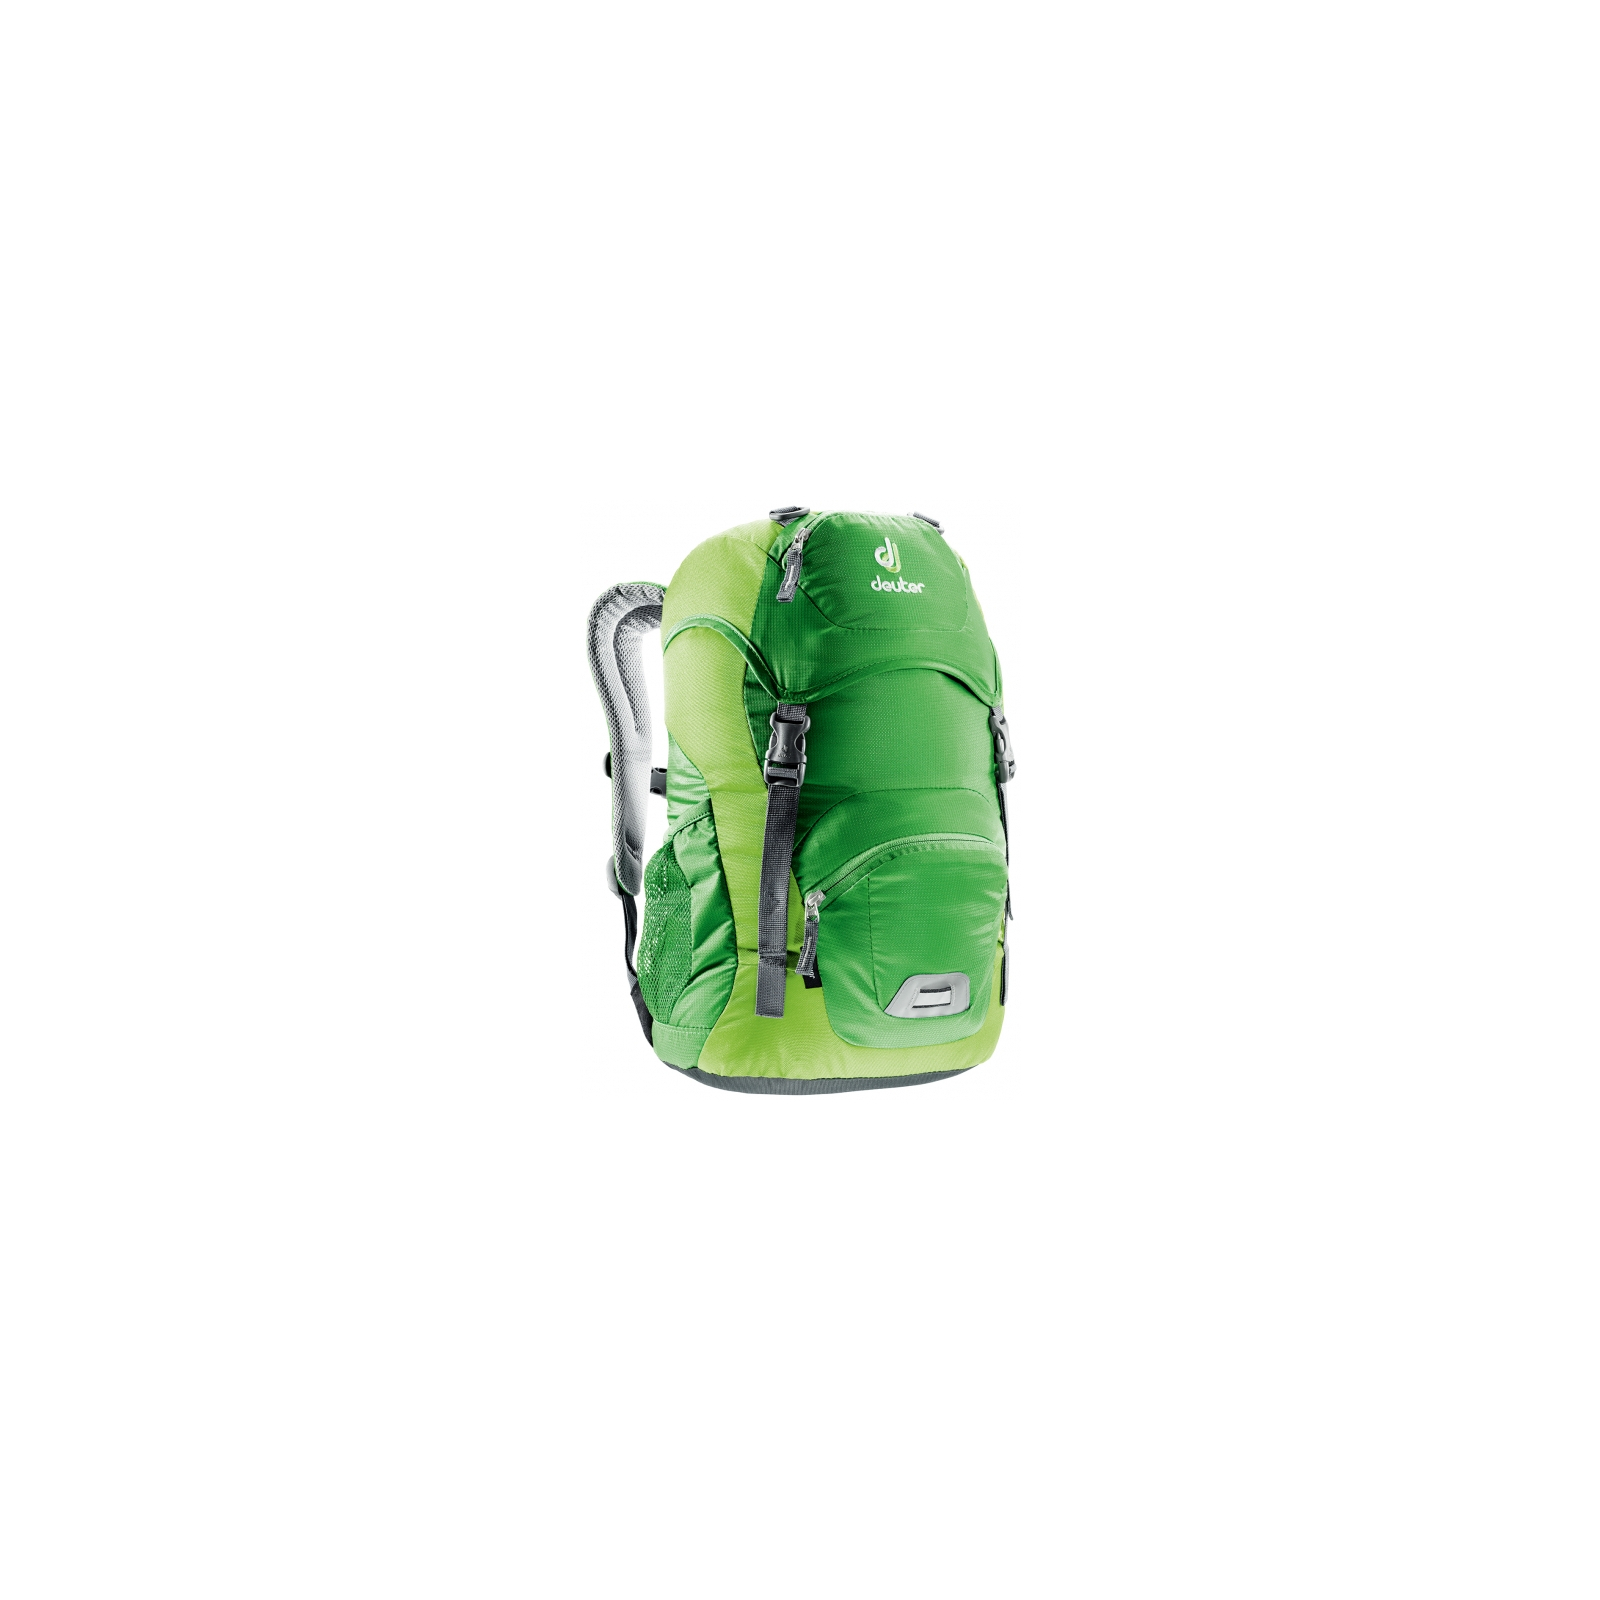 Рюкзак туристический Deuter Junior 2208 emerald-kiwi (36029 2208)